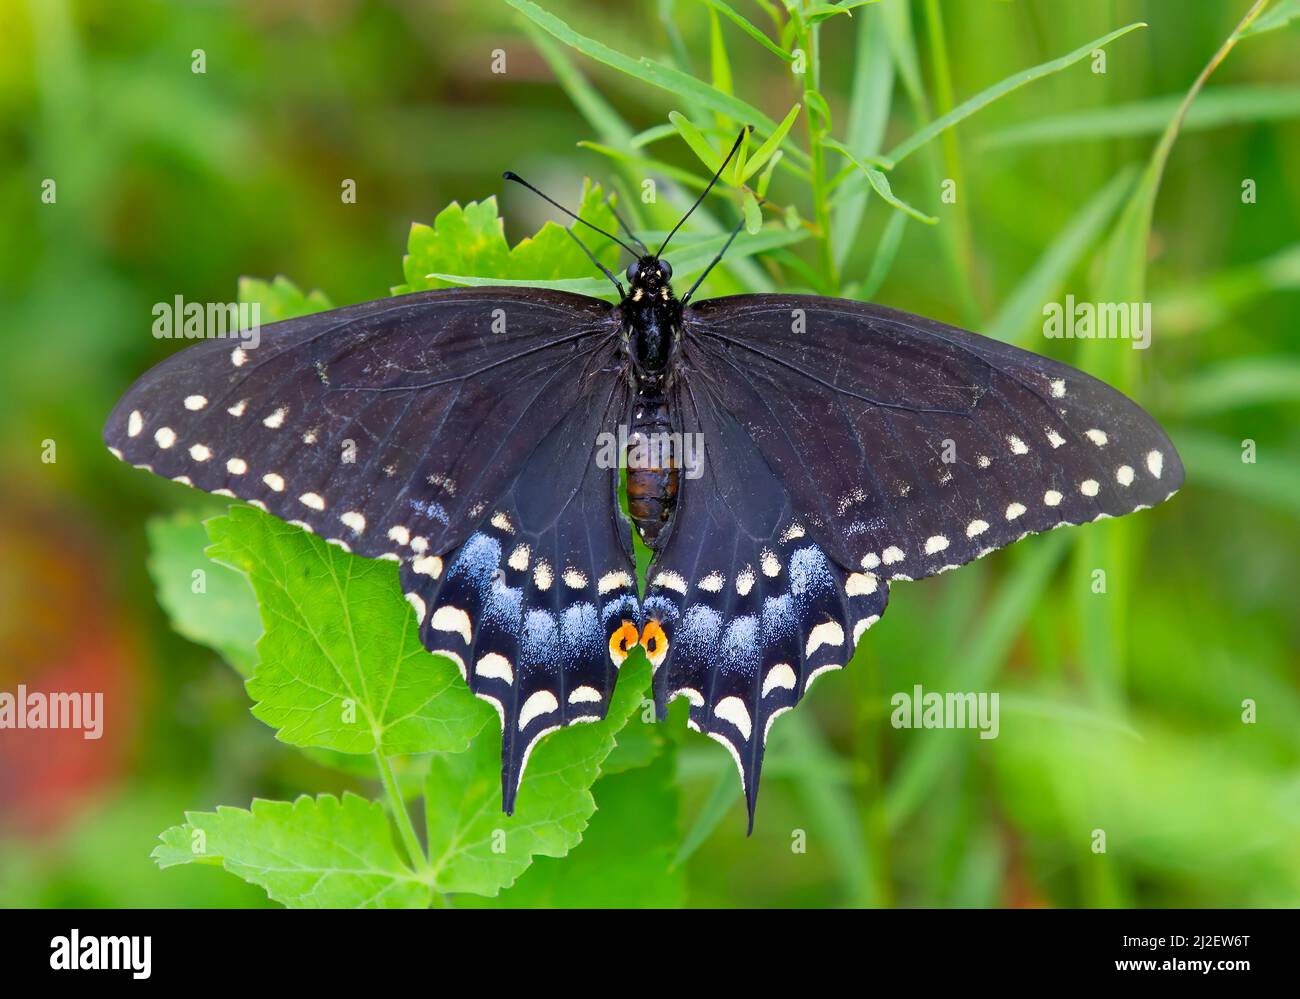 Papillon à queue noire (Papilionidae) avec ailes ouvertes sur une plante verte Banque D'Images